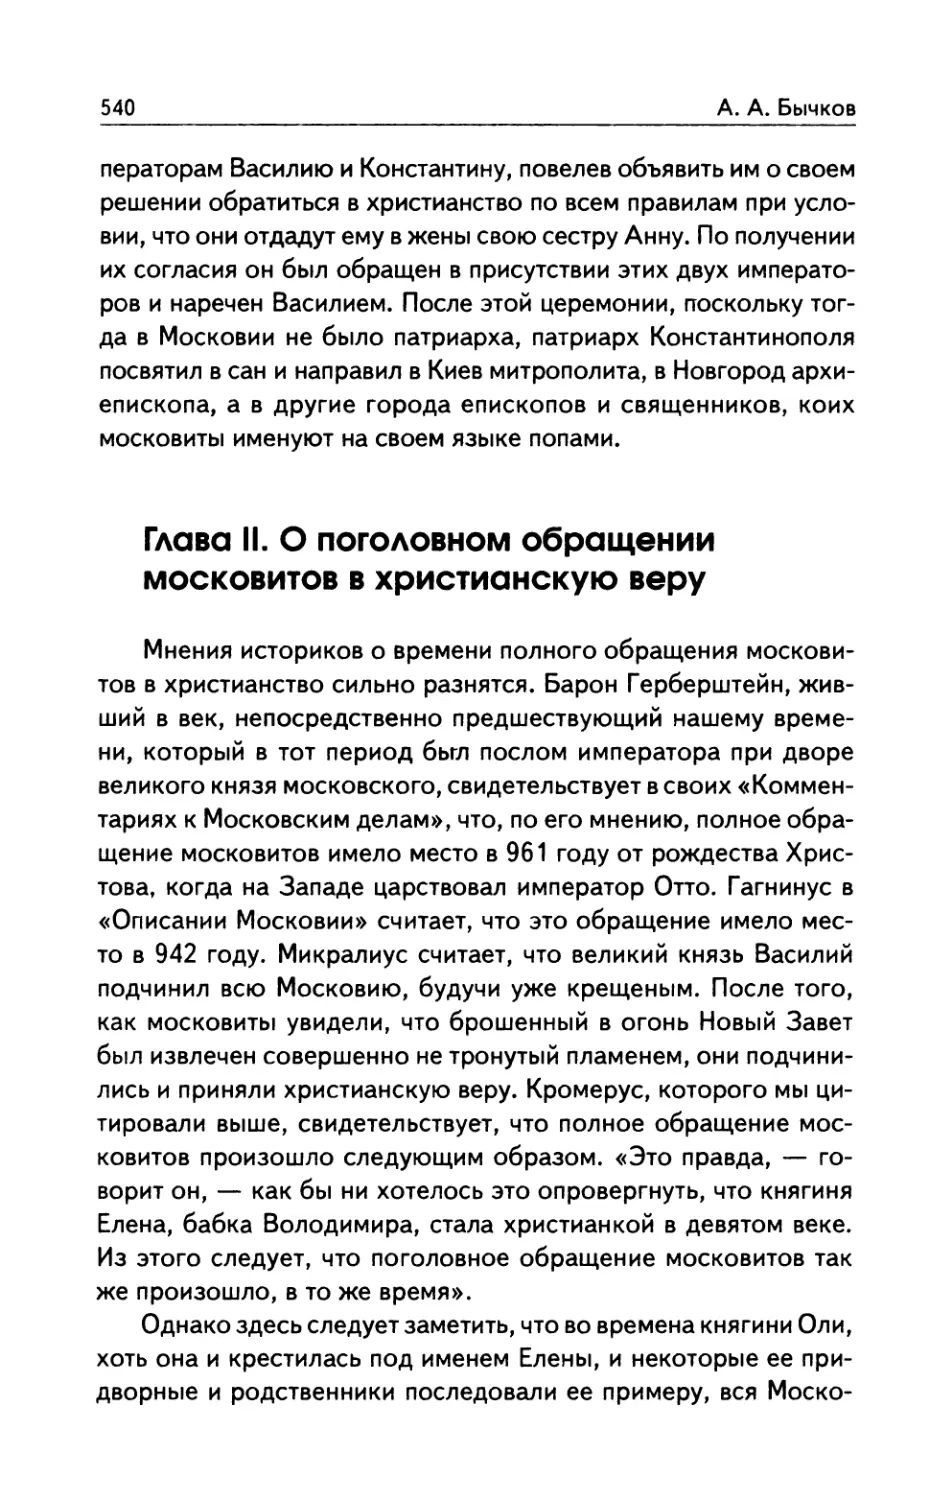 Глава  II.  О  поголовном  обращении  московитов в  христианскую  веру